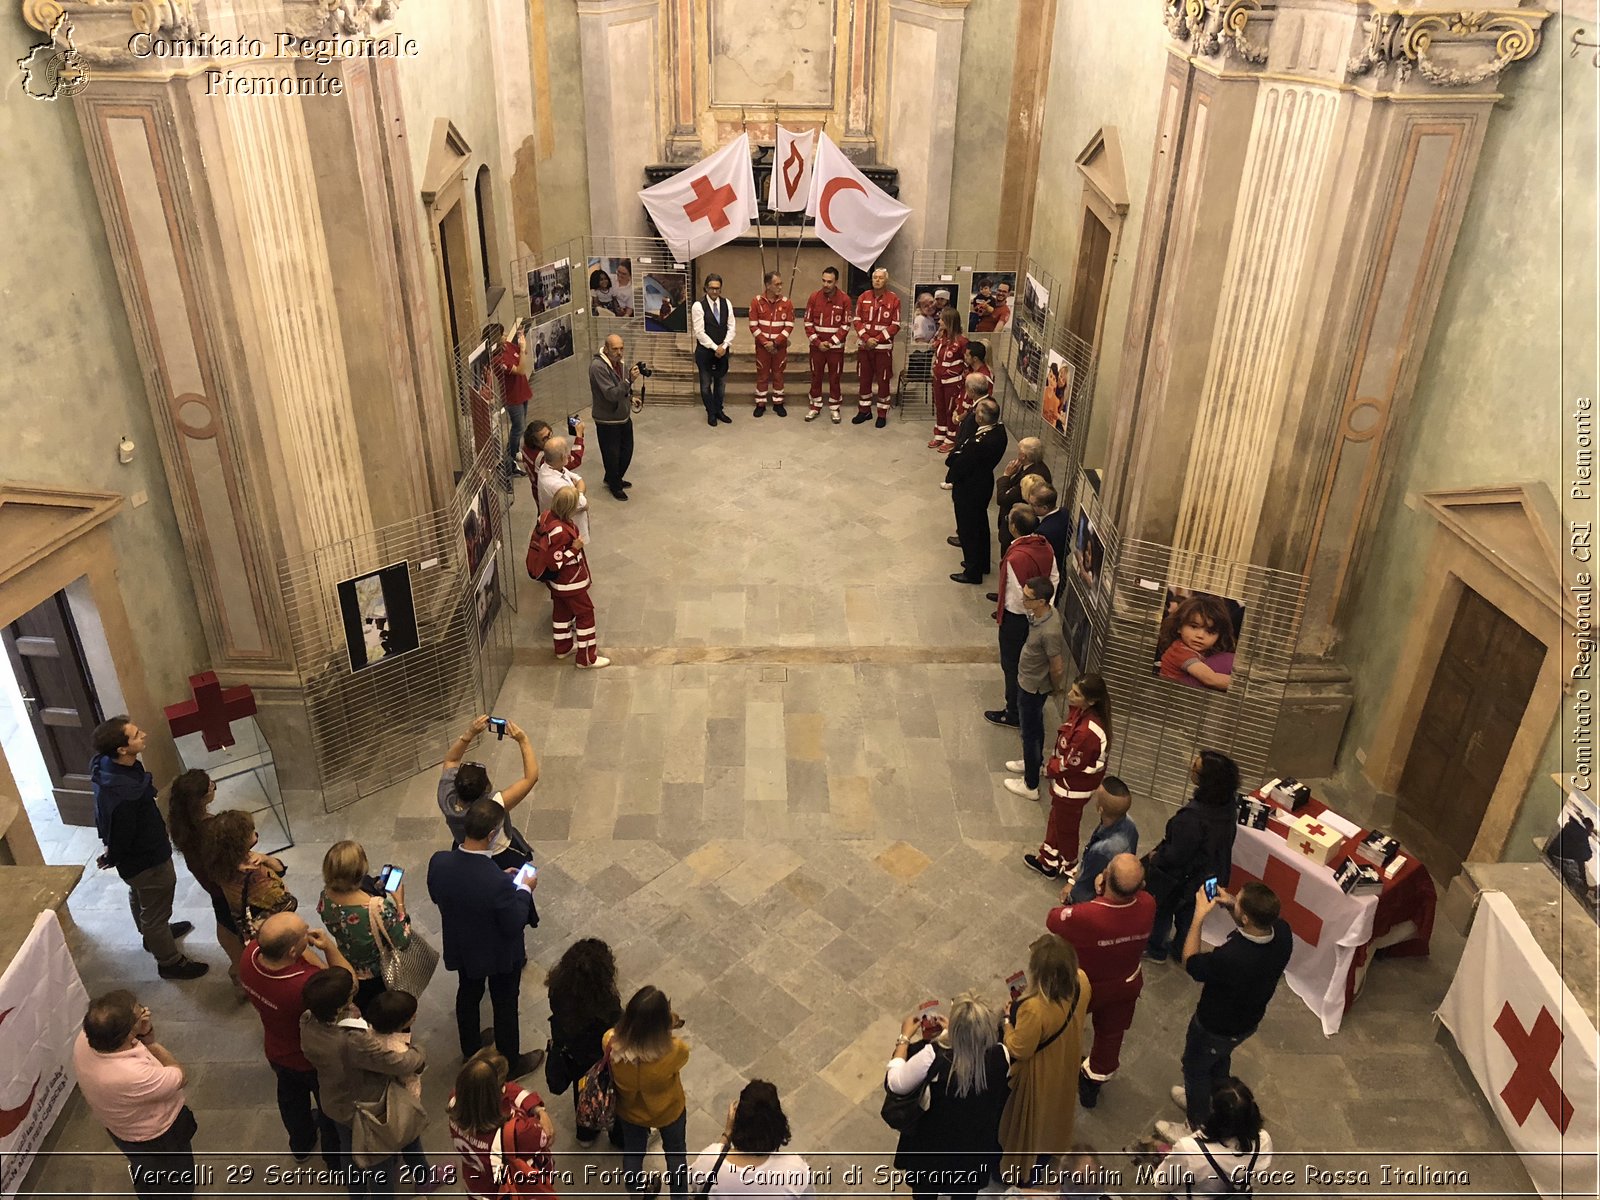 Vercelli 29 Settembre 2018 - Mostra Fotografica "Cammini di Speranza" di Ibrahim Malla - Croce Rossa Italiana- Comitato Regionale del Piemonte